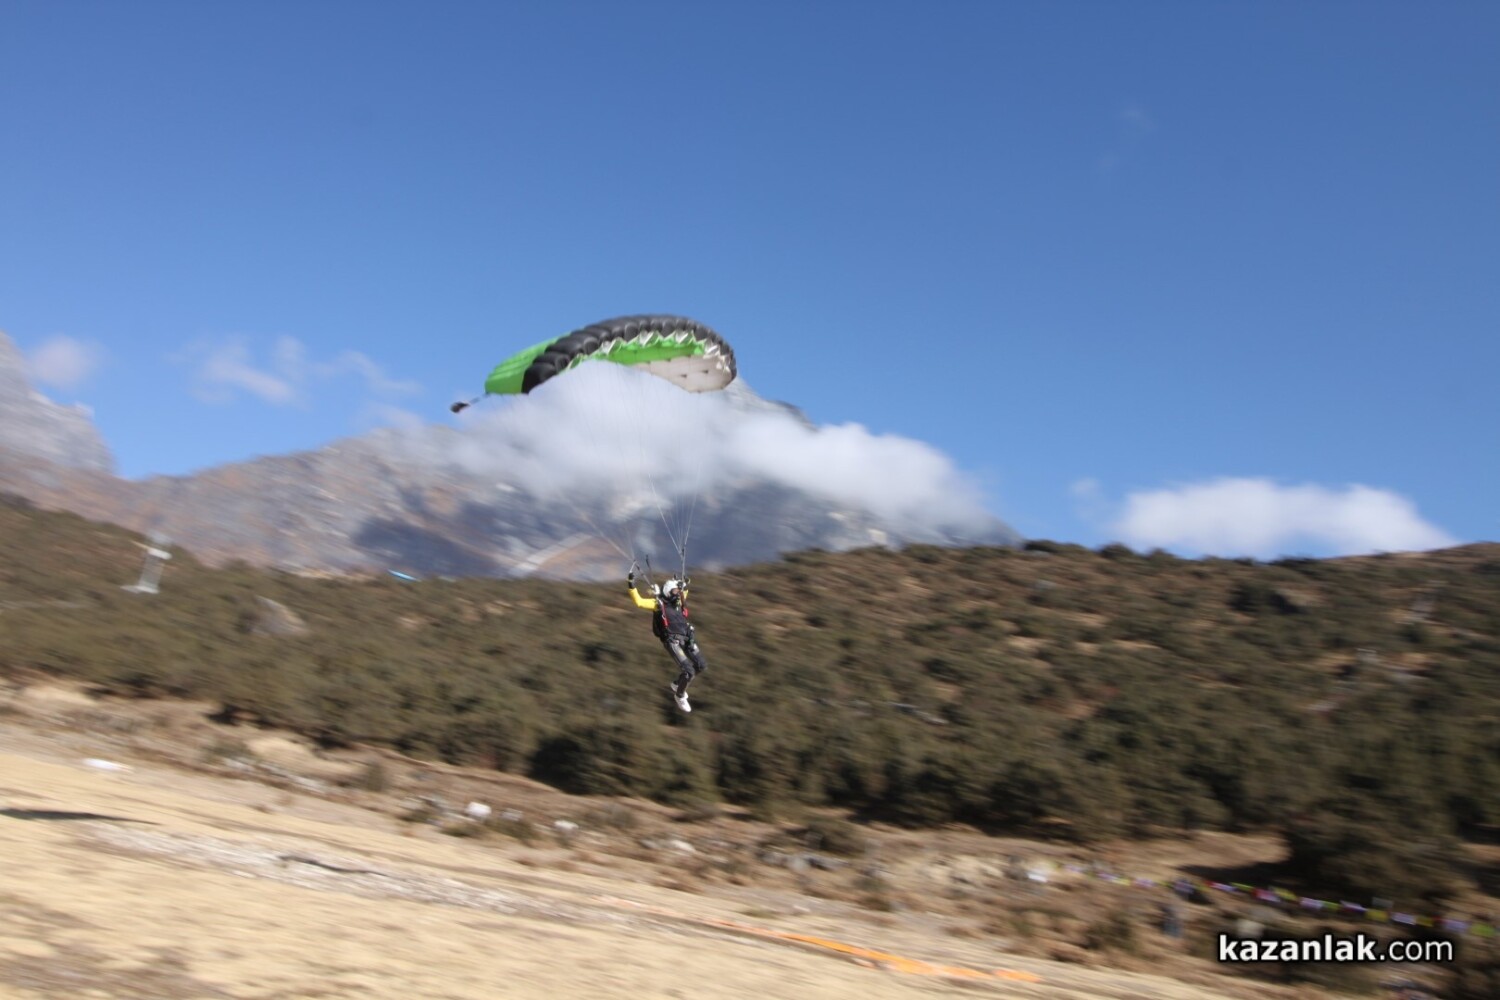 Българинът Красимир Илиев скочи с рекордно малък парашут край Еверест